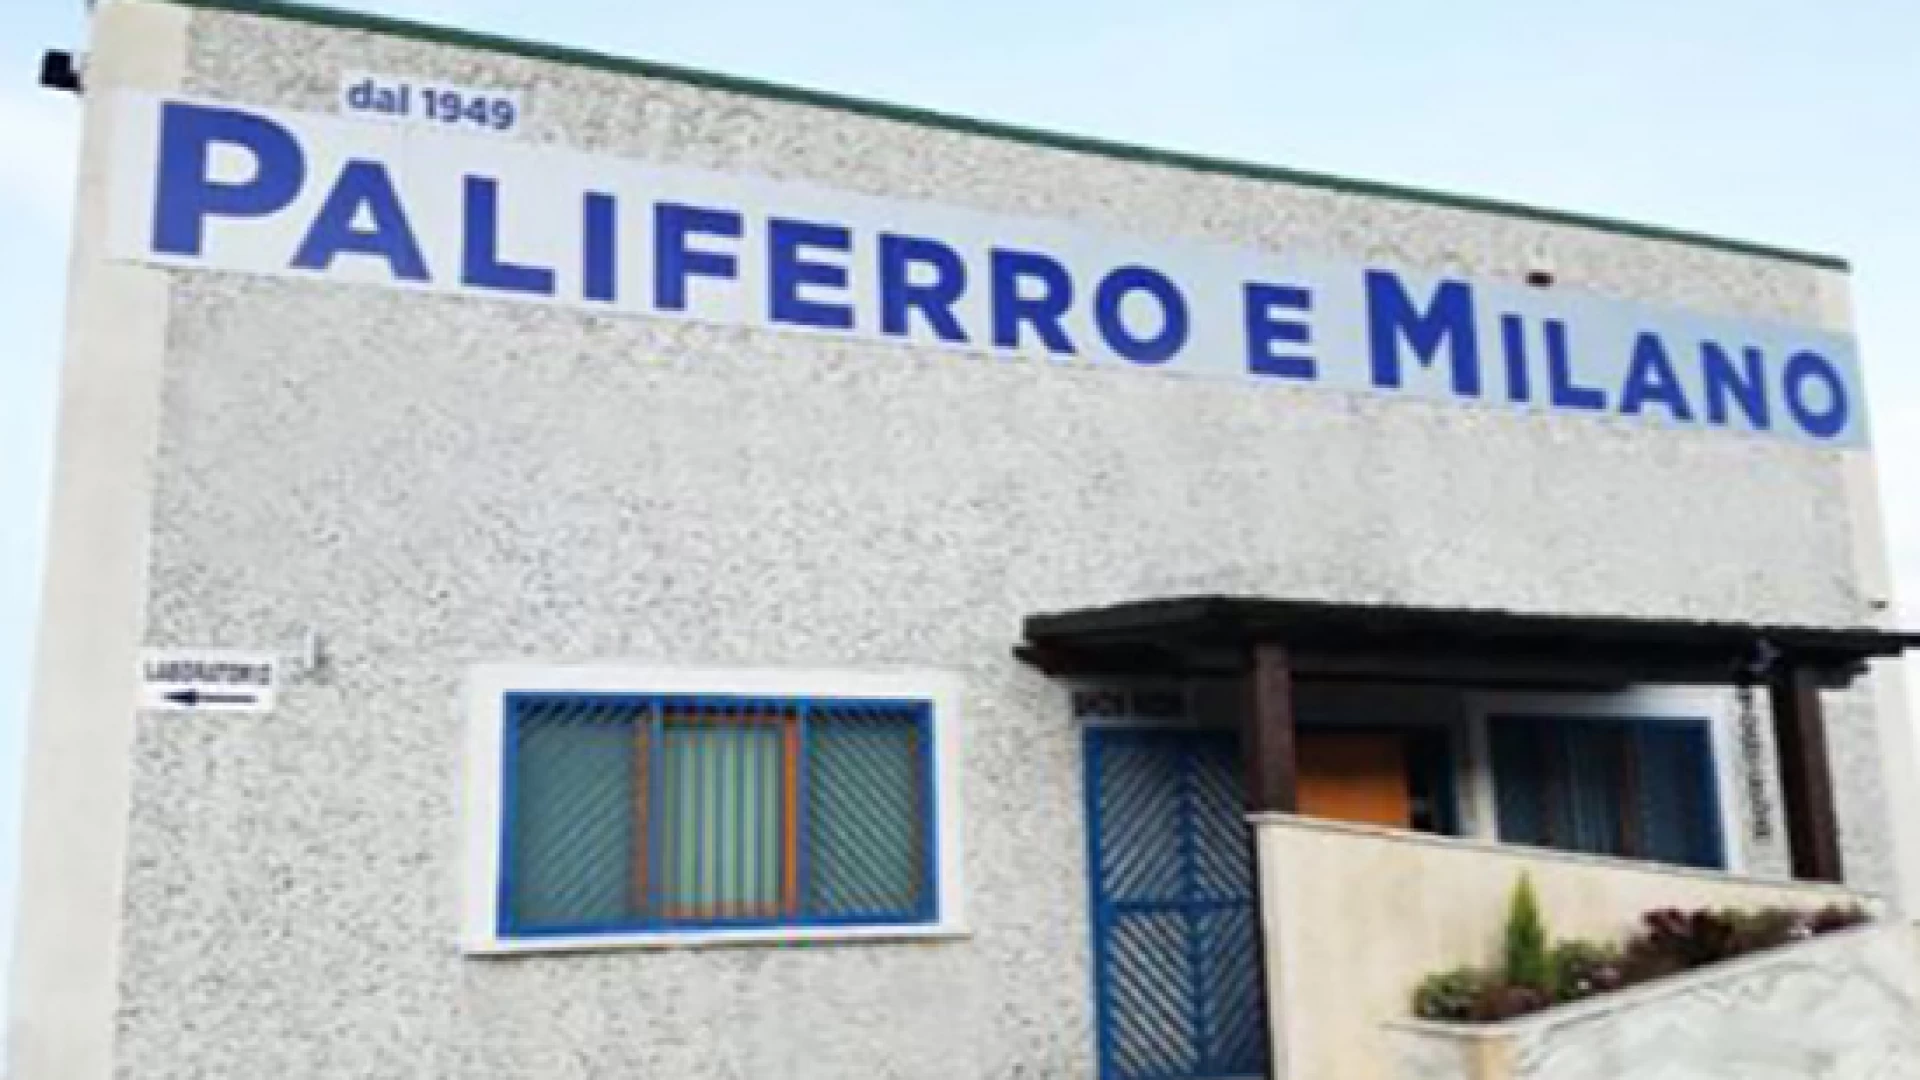 Le aziende informano: Paliferro e Milano rinnova lo stabilimento unico di Colli a Volturno. Arte funeraria e lavorazione del marmo dal 1949. La sede unica collese sta cambiando volto.